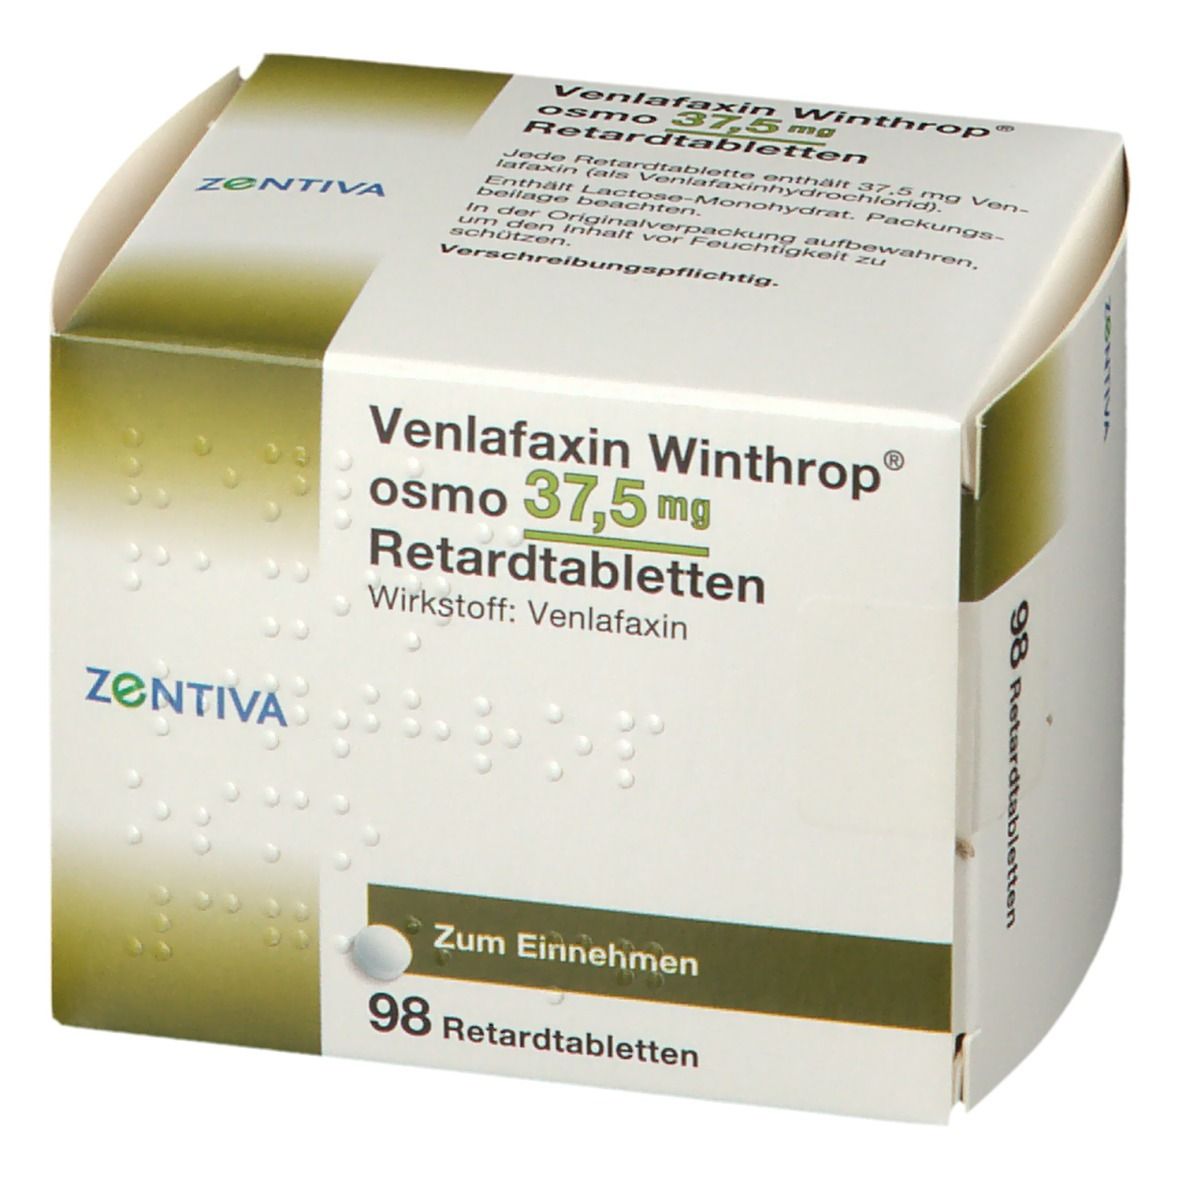 Venlafaxin Winthrop® osmo 37,5 mg Retardtabletten